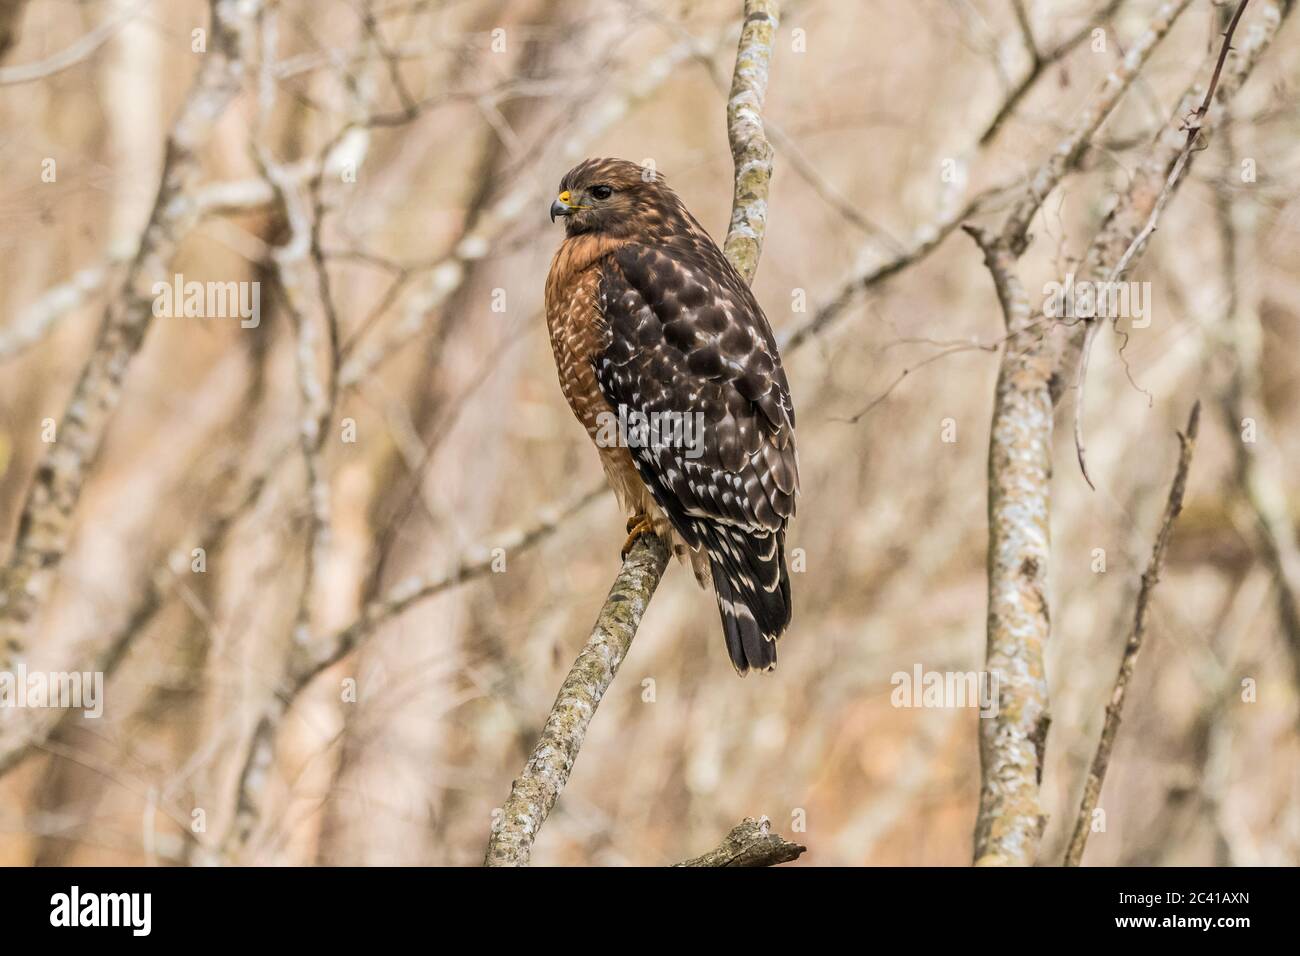 Adulto de Cooper's hawk encaramado en una rama de árboles en los bosques observando y esperando comida en un día de invierno Foto de stock